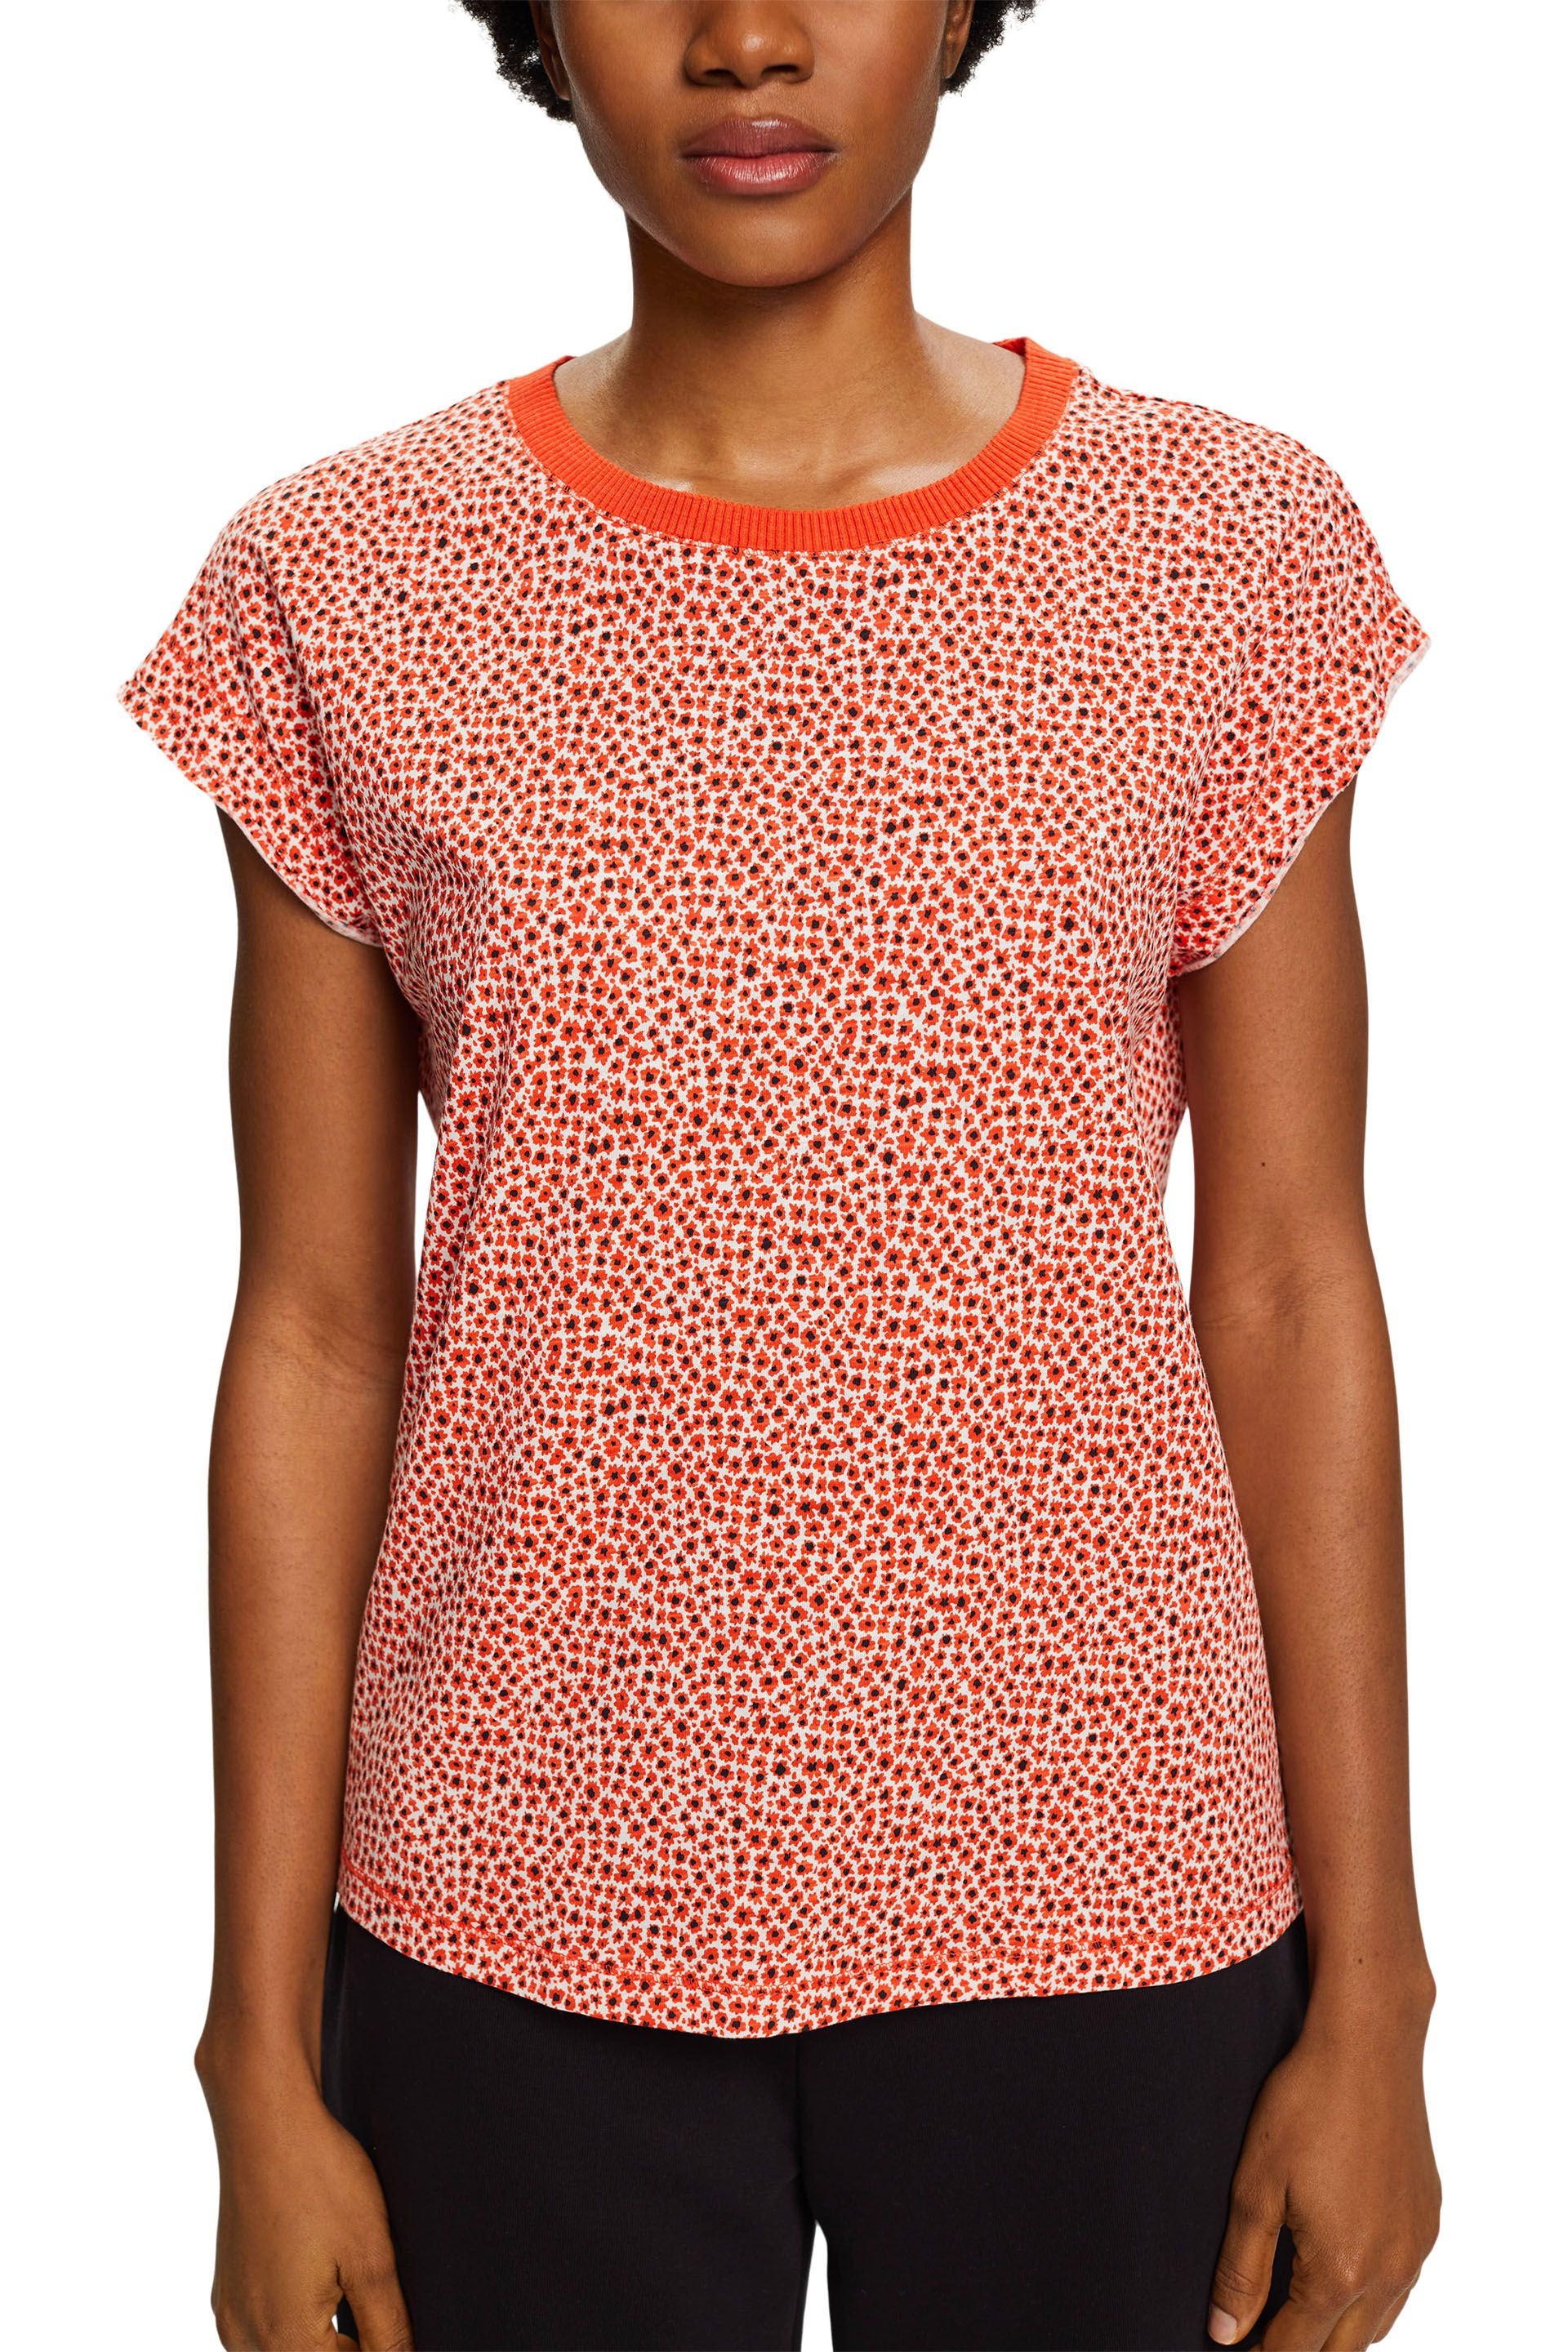 Esprit - T-shirt with all over floral motif, Orange, large image number 2